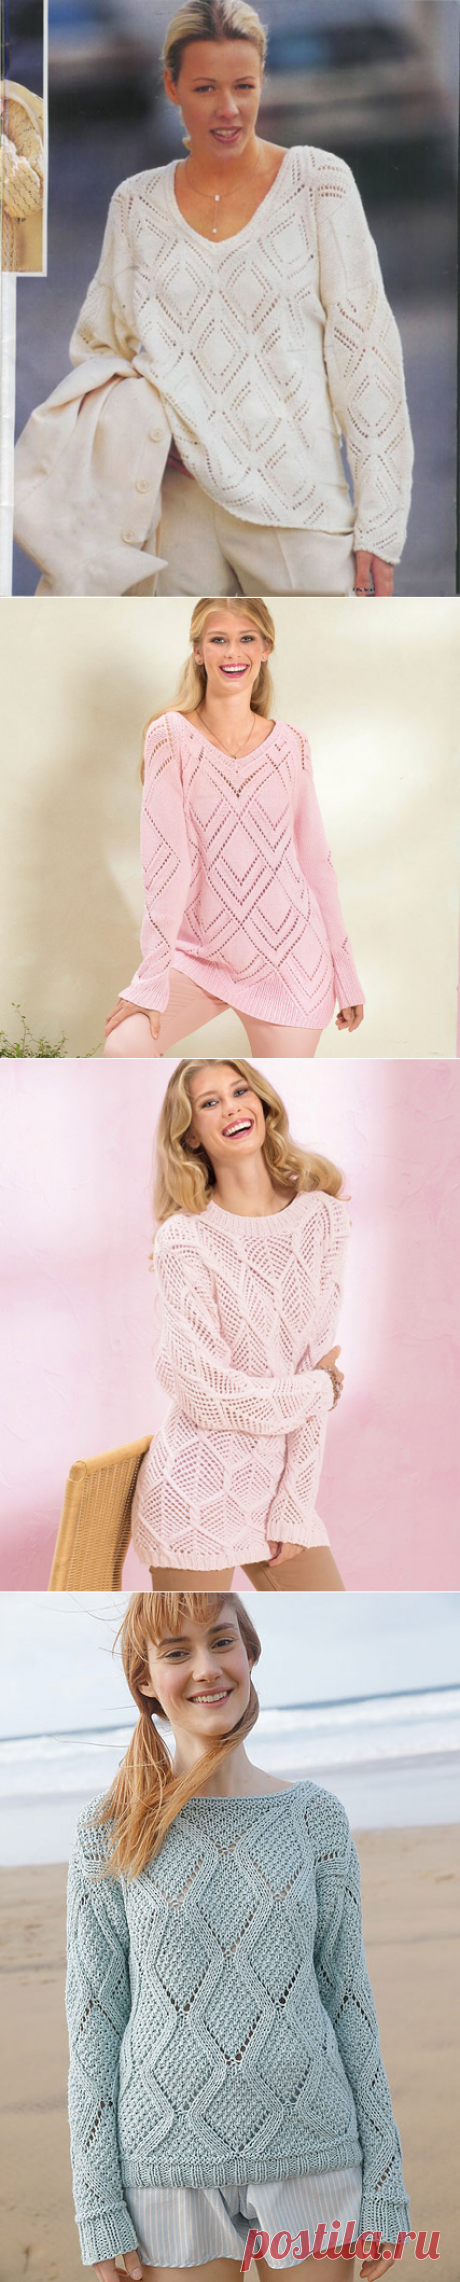 Женские пуловеры с большими ажурными ромбами спицами – 4 схемы вязания с описанием нюдовых цветов